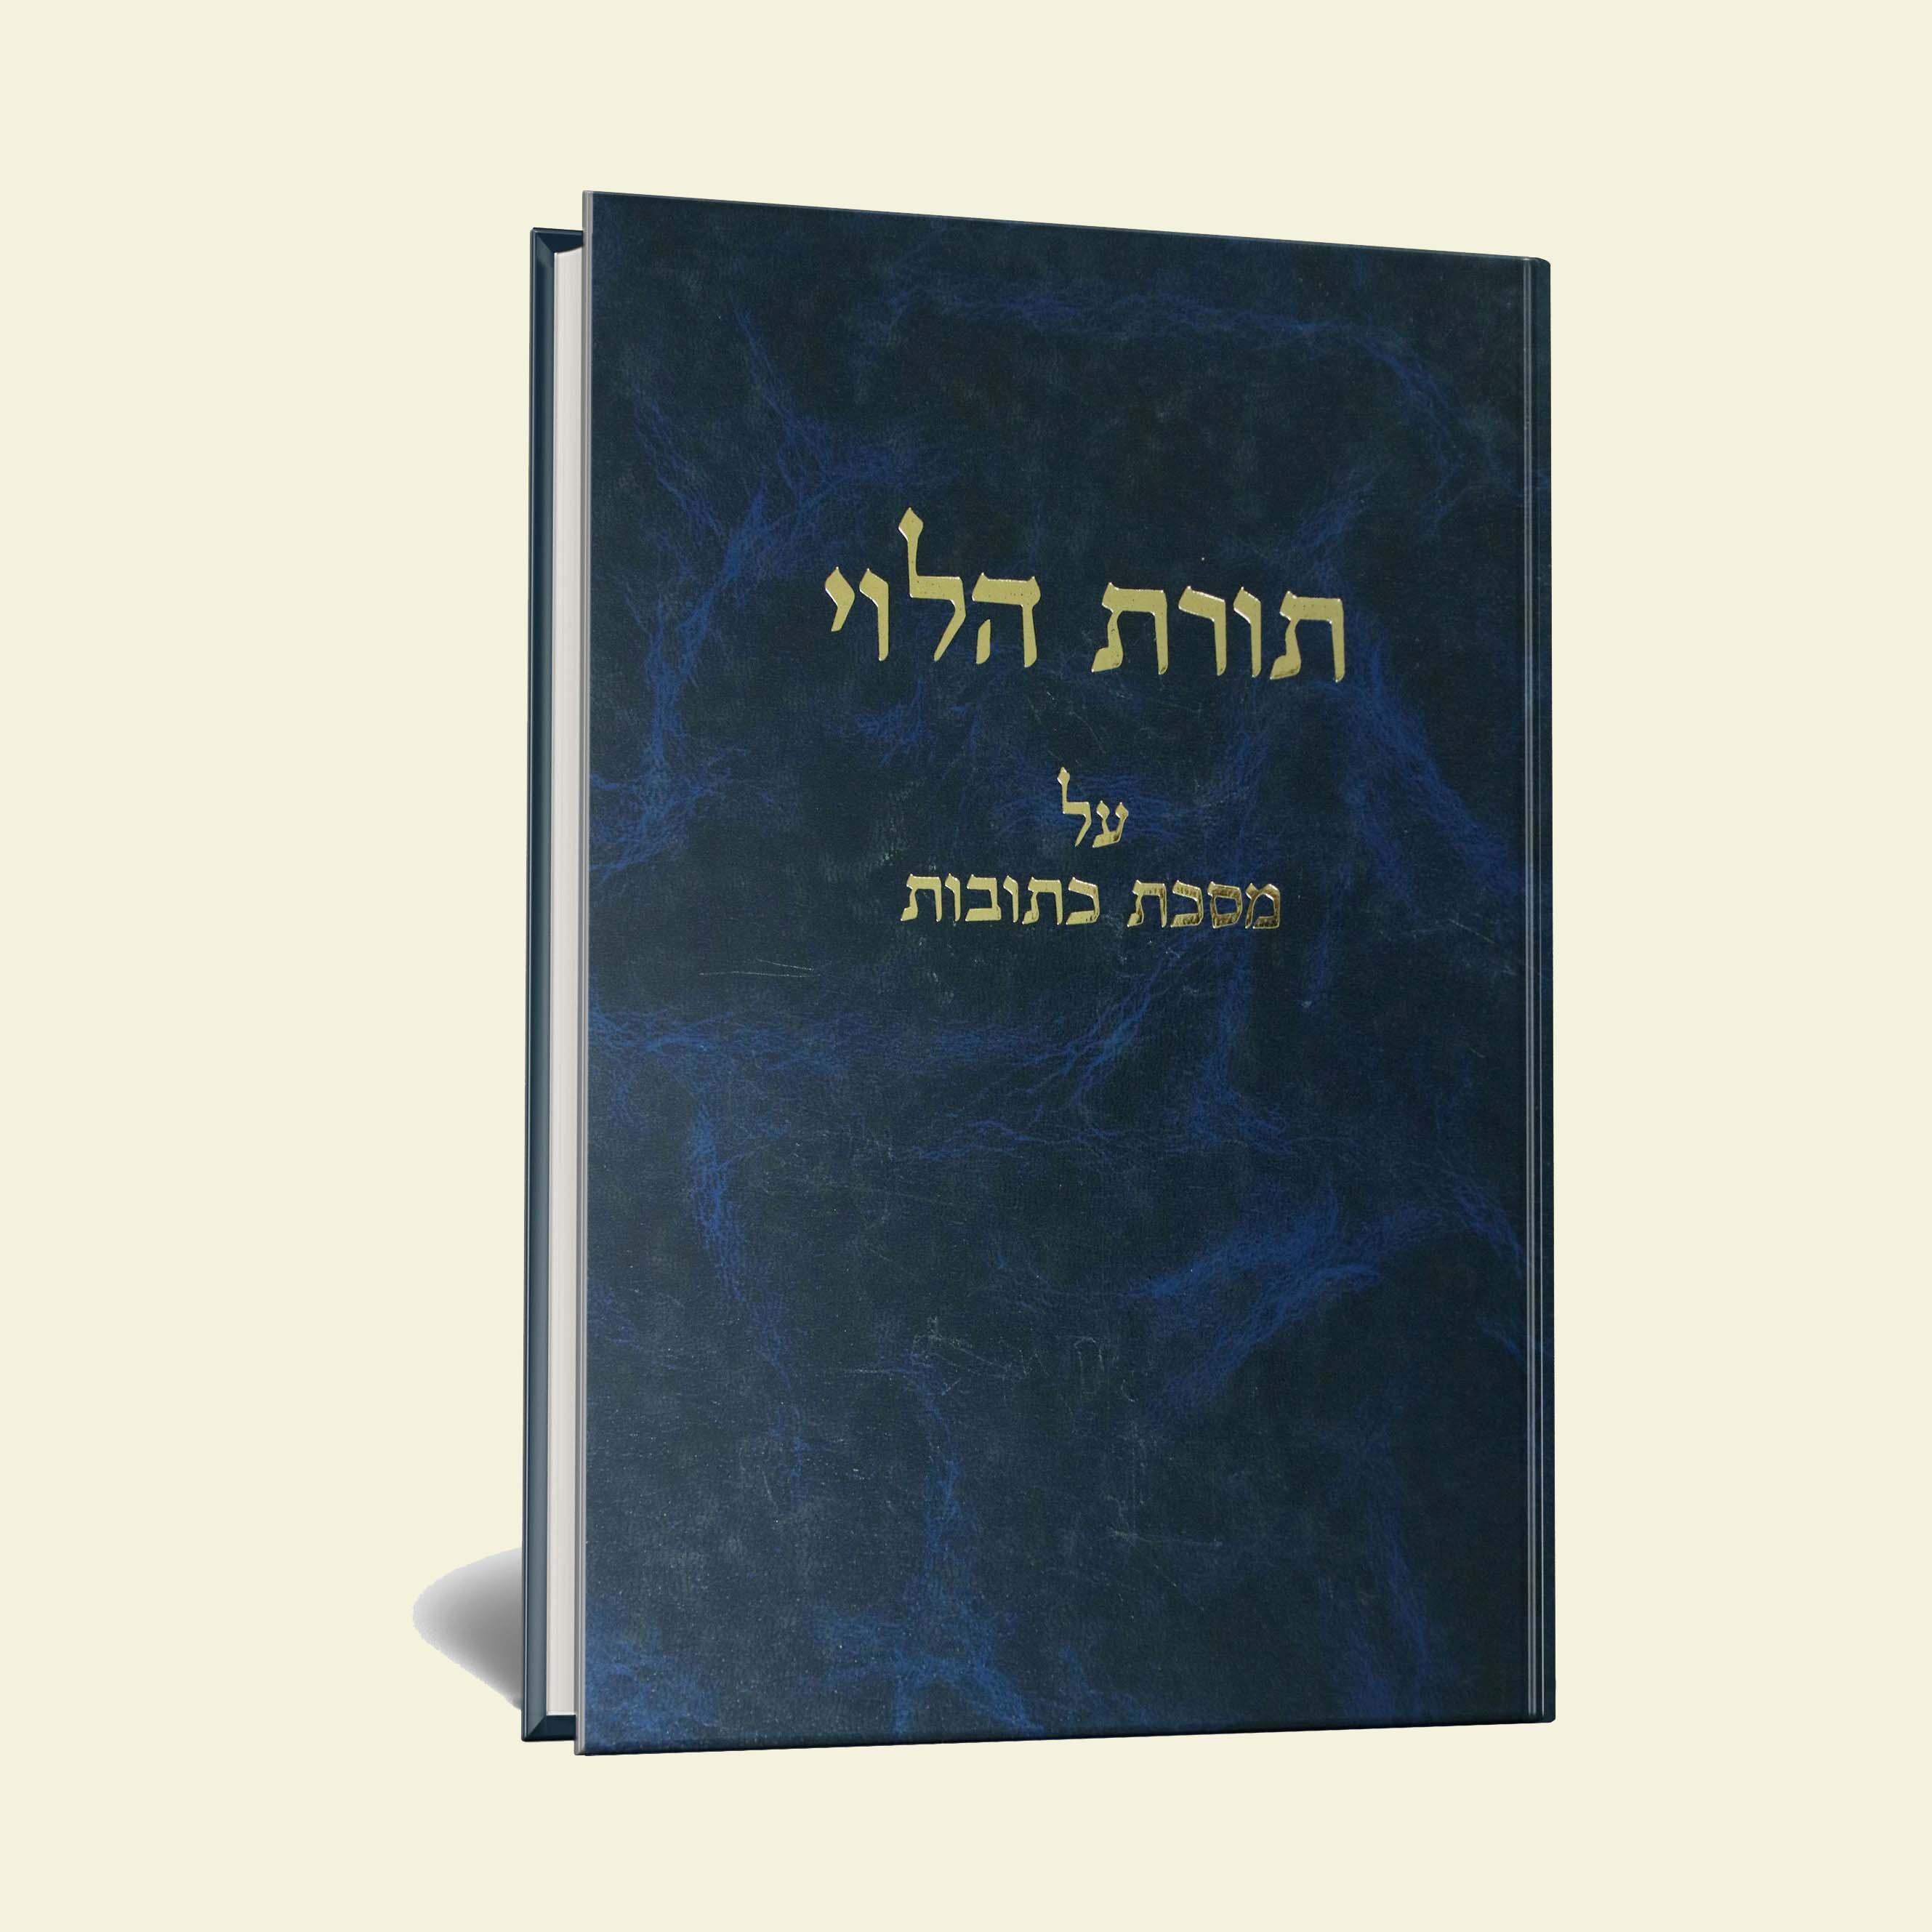 תורת הלוי כתובות למו"ר הרב מרדכי פרום זצ"ל